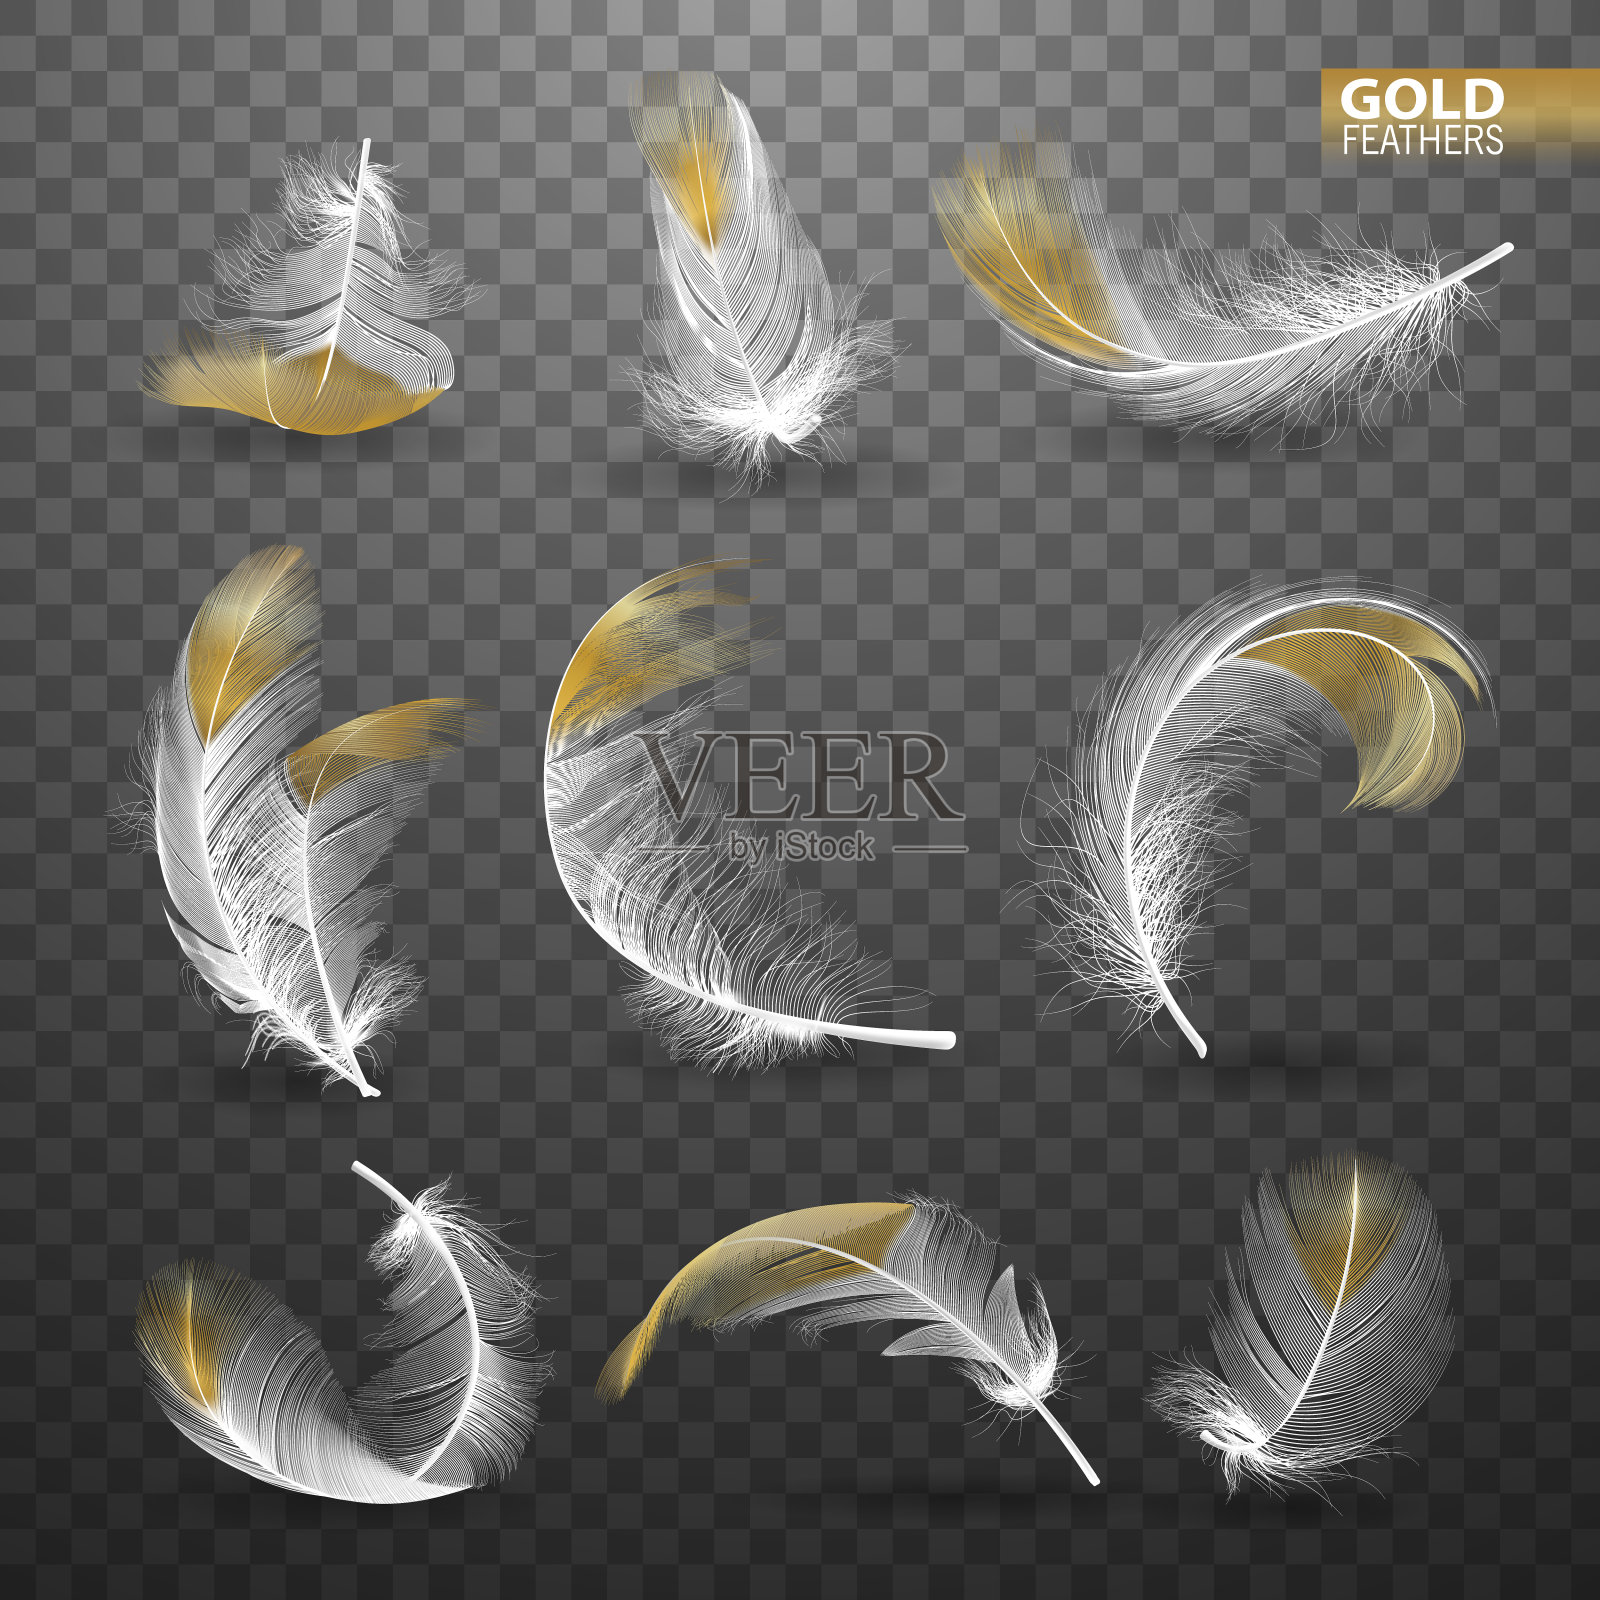 一套孤立的黄金下落白色蓬松的旋转羽毛在透明的背景在现实主义风格。矢量图设计元素图片